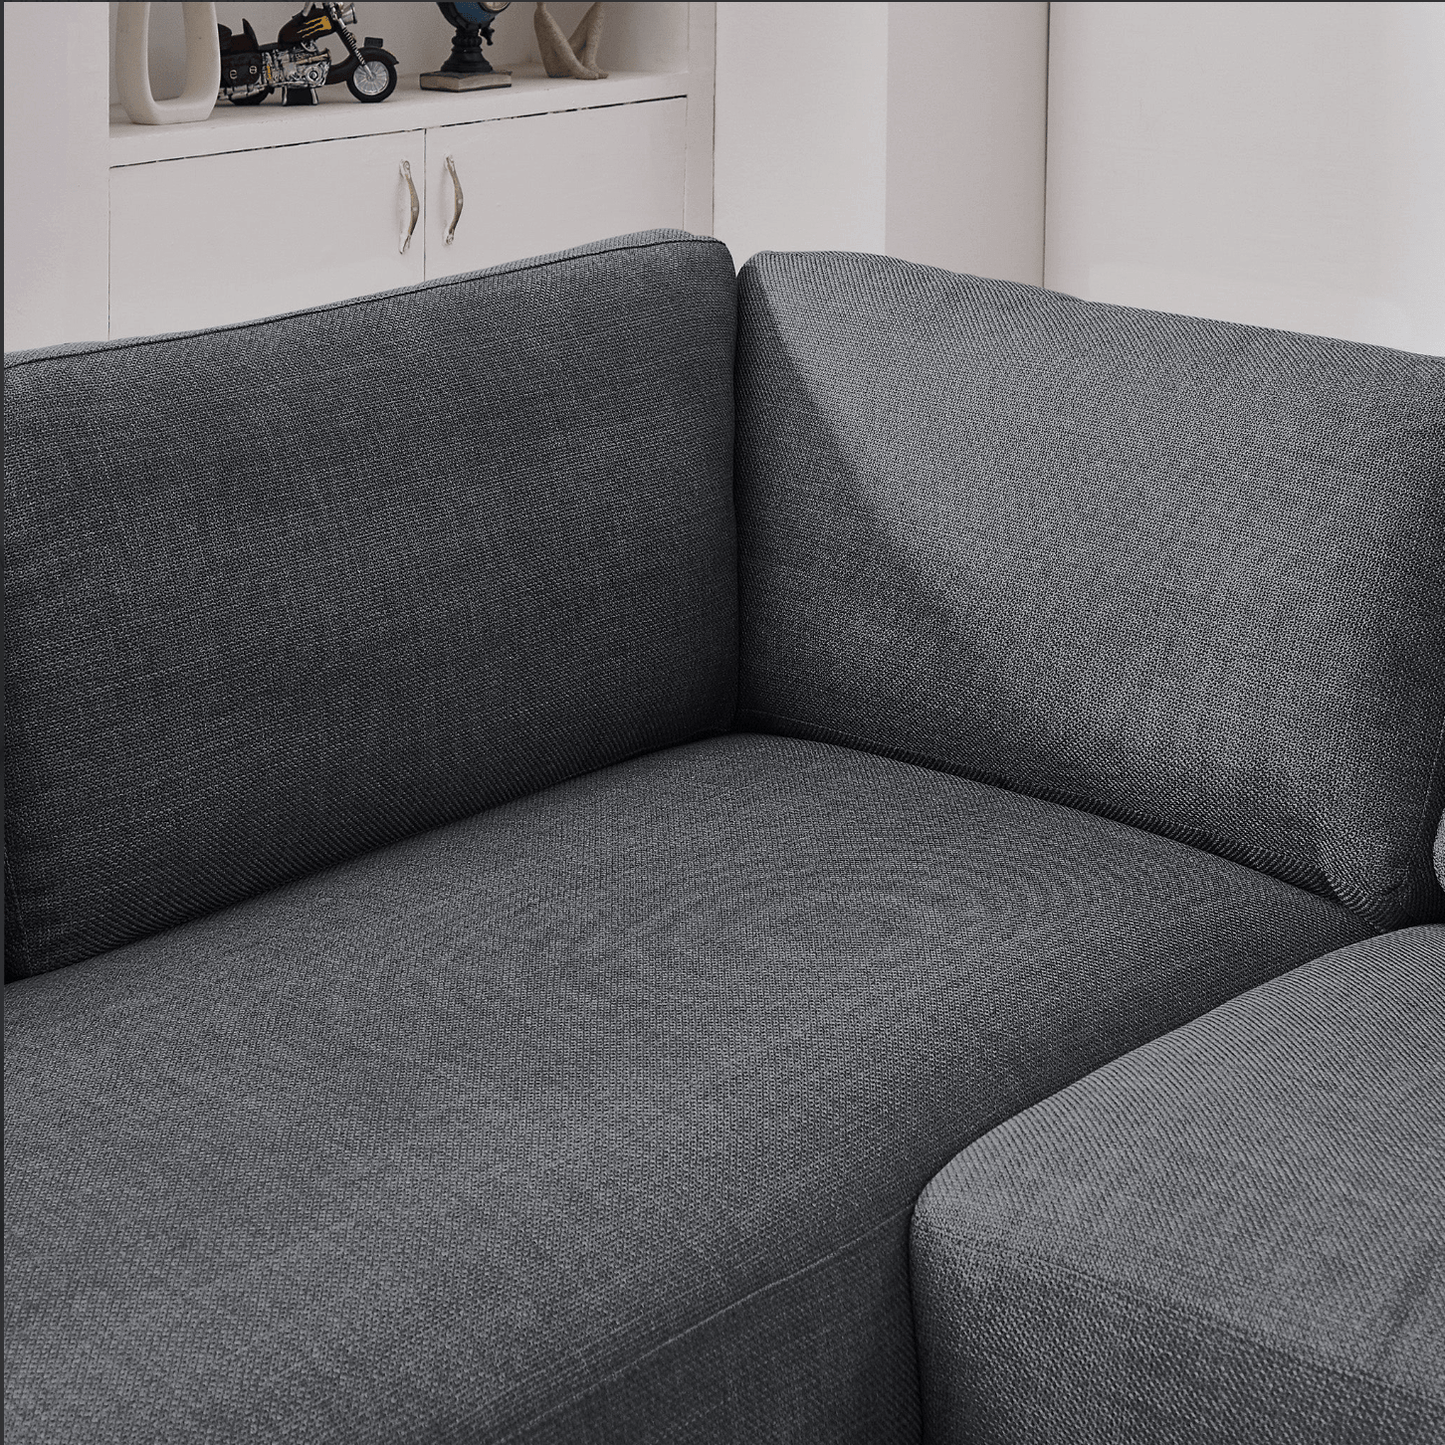 Glander Modern Linen Sectional Chaise Sofa 108" - Revel Sofa 